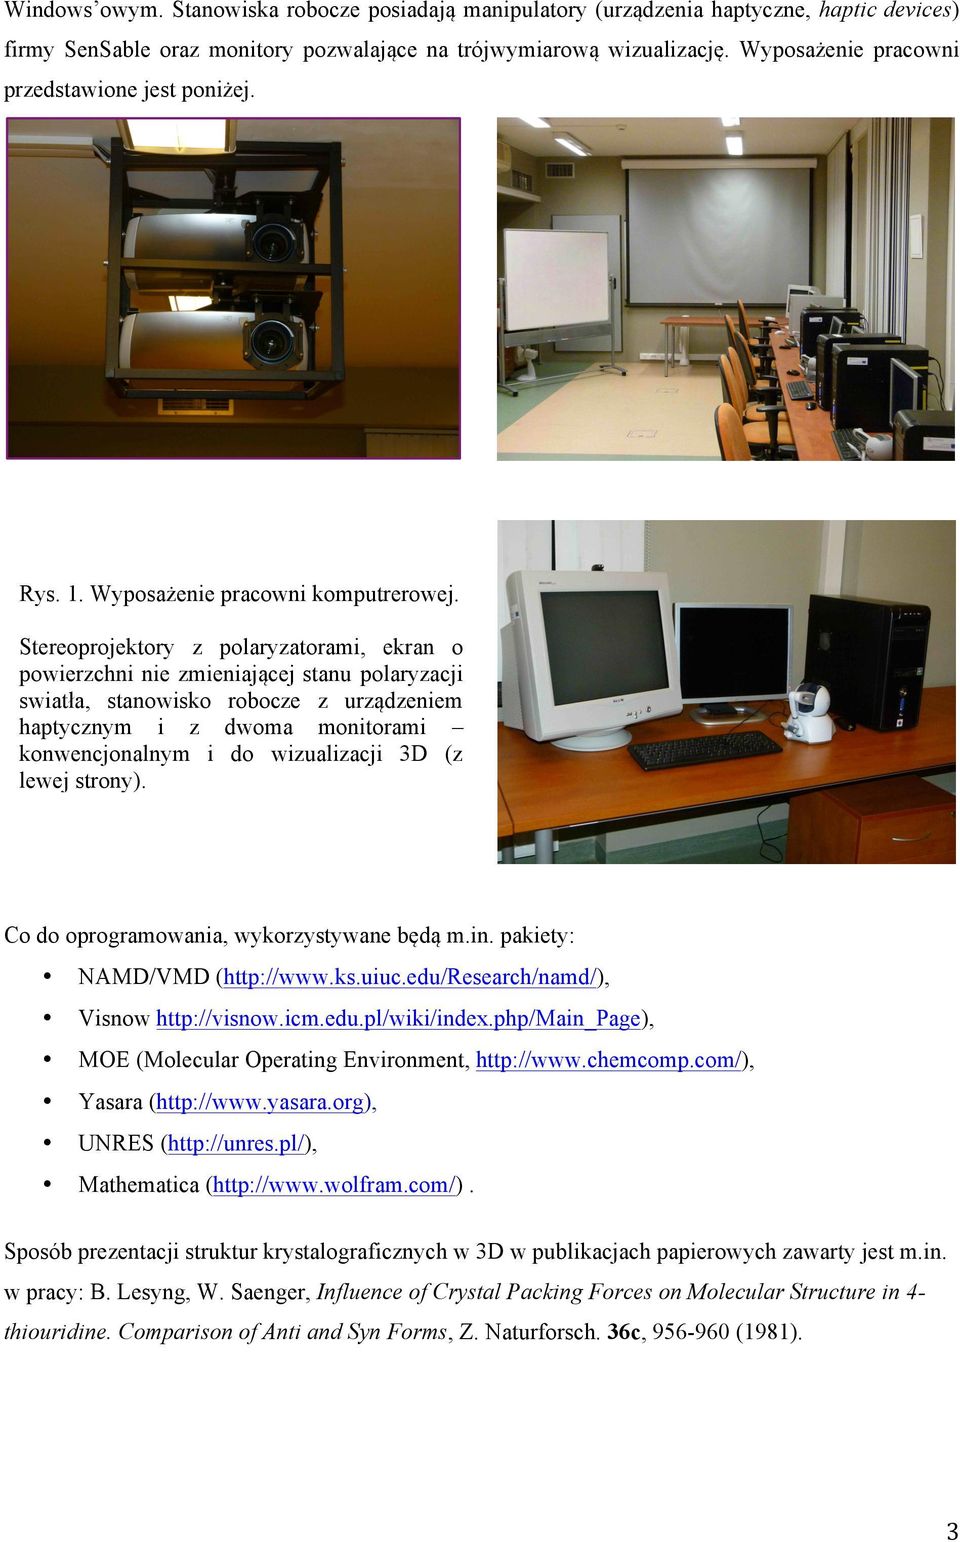 Stereoprojektory z polaryzatorami, ekran o powierzchni nie zmieniającej stanu polaryzacji swiatła, stanowisko robocze z urządzeniem haptycznym i z dwoma monitorami konwencjonalnym i do wizualizacji